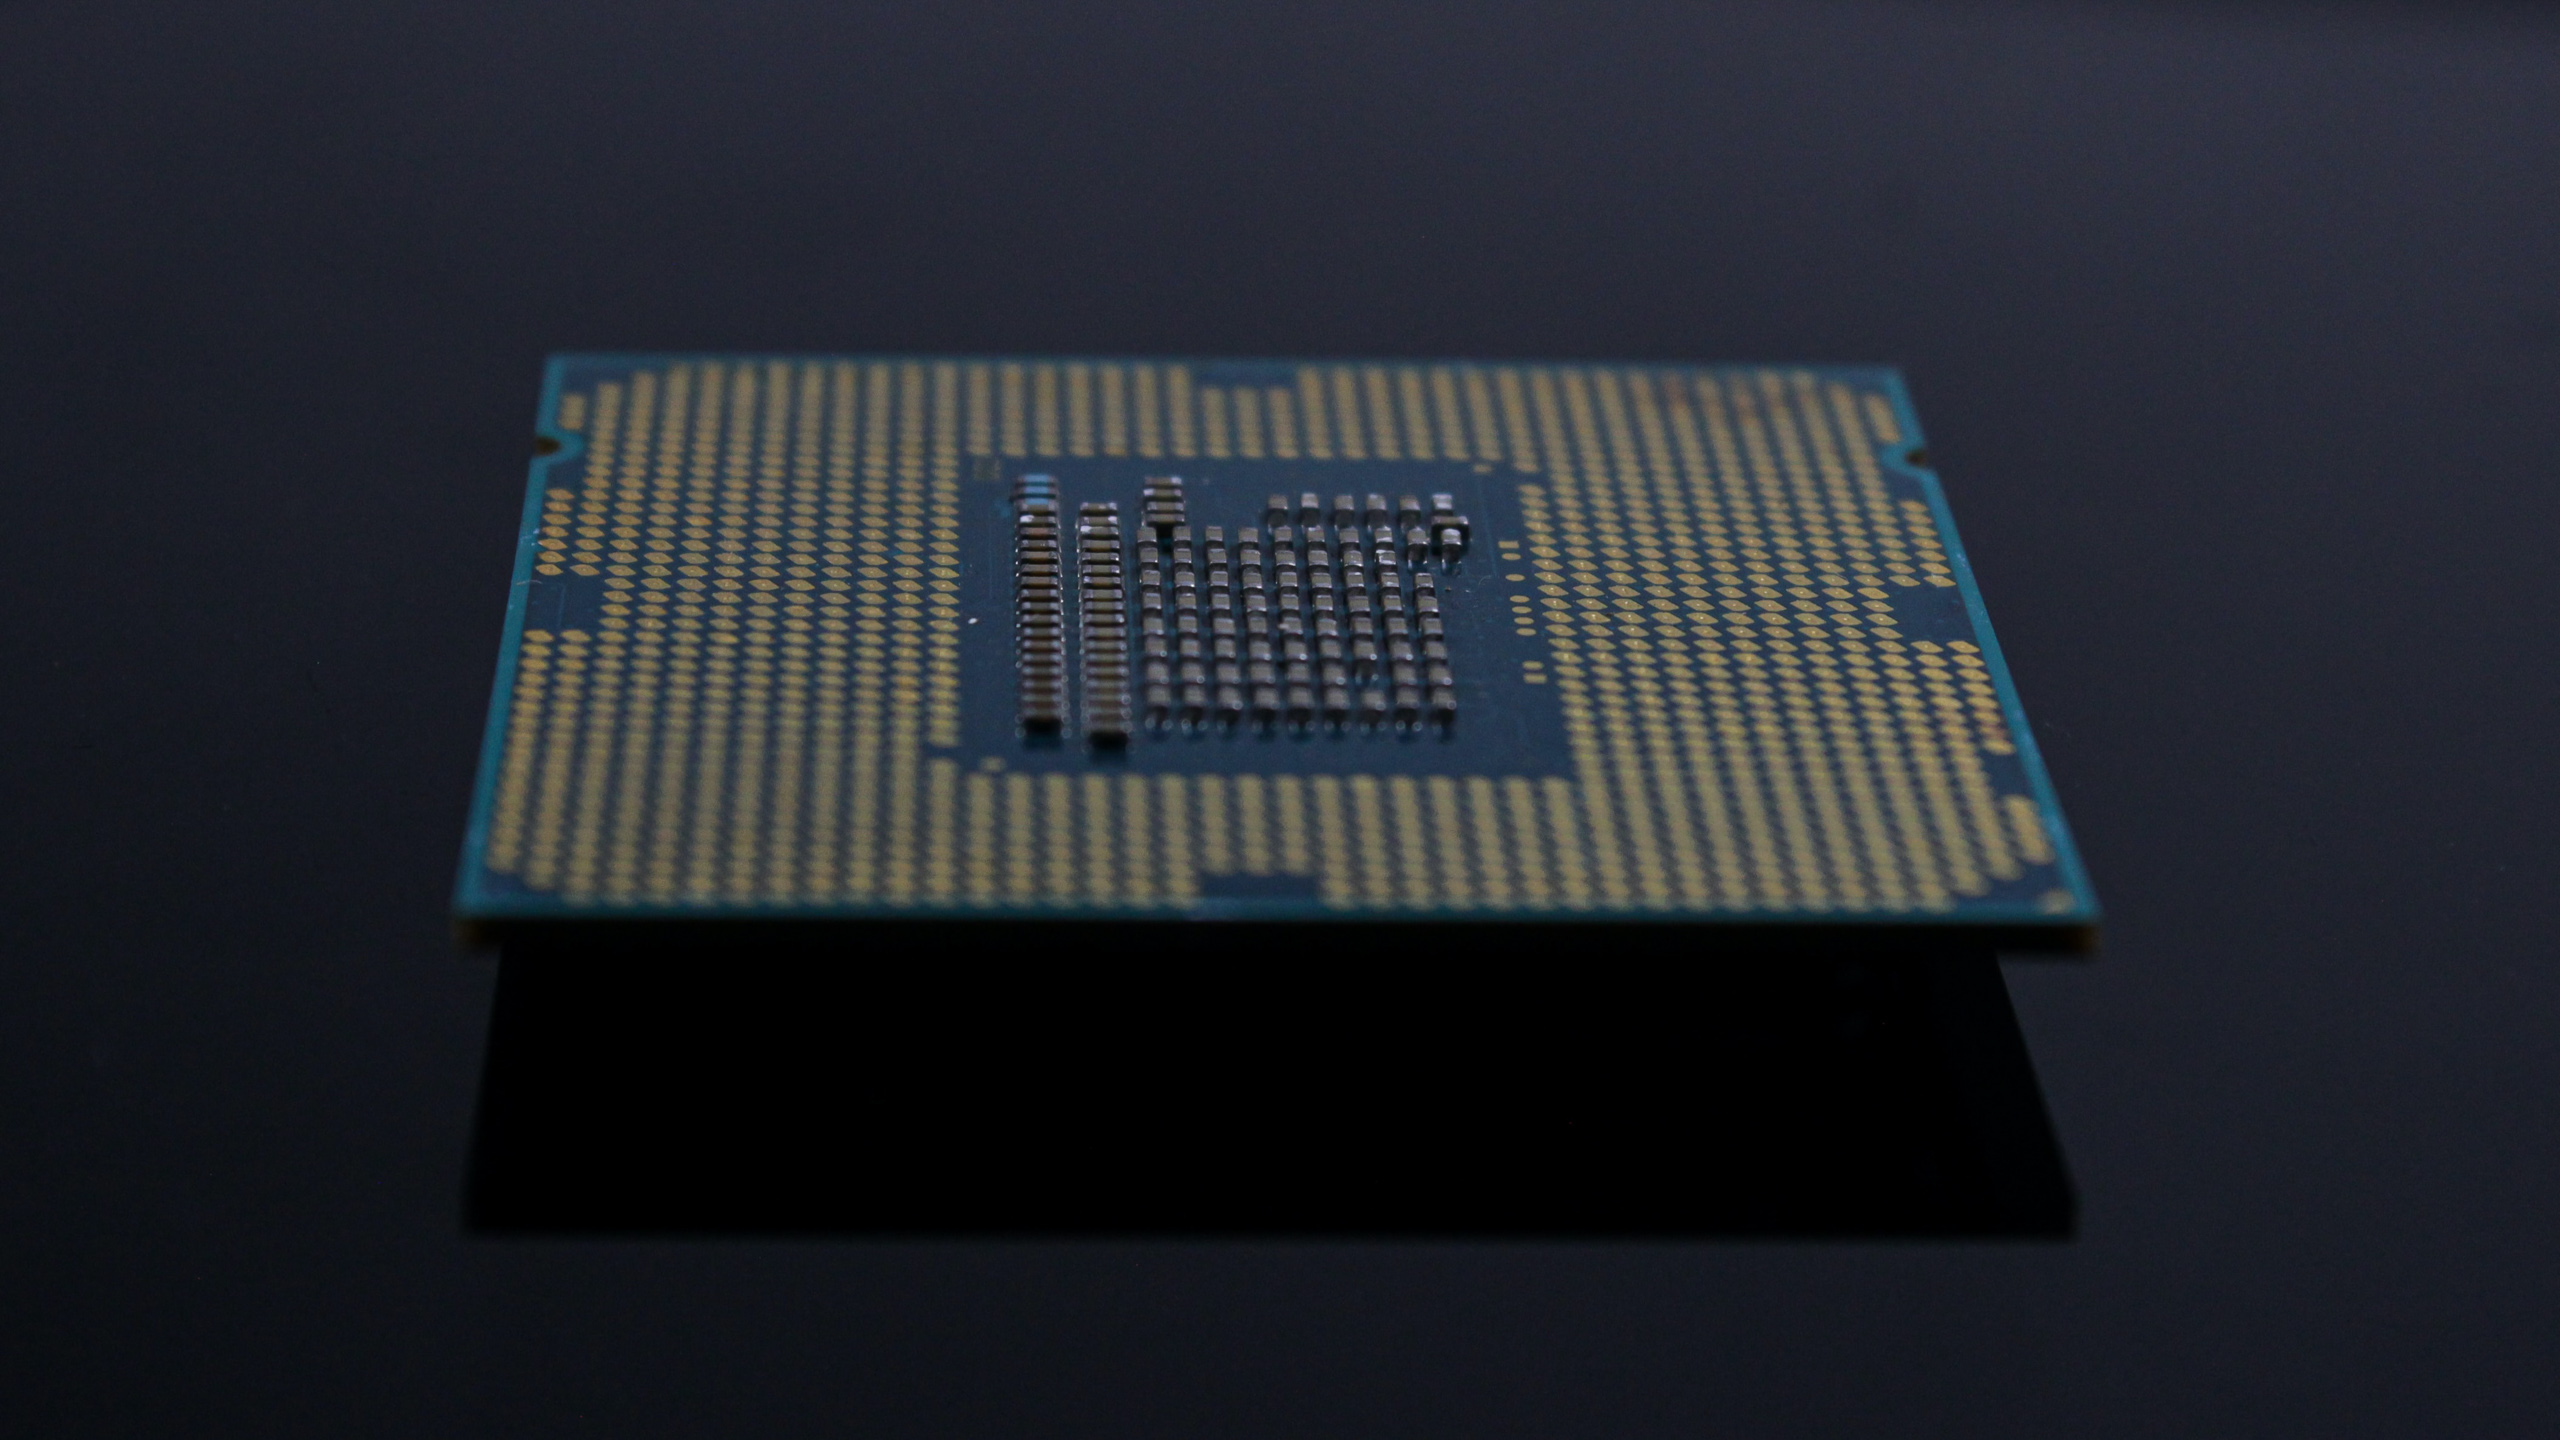 Intel khai thác mạng lưới nhà máy để vượt qua khủng hoảng thiếu chất nền